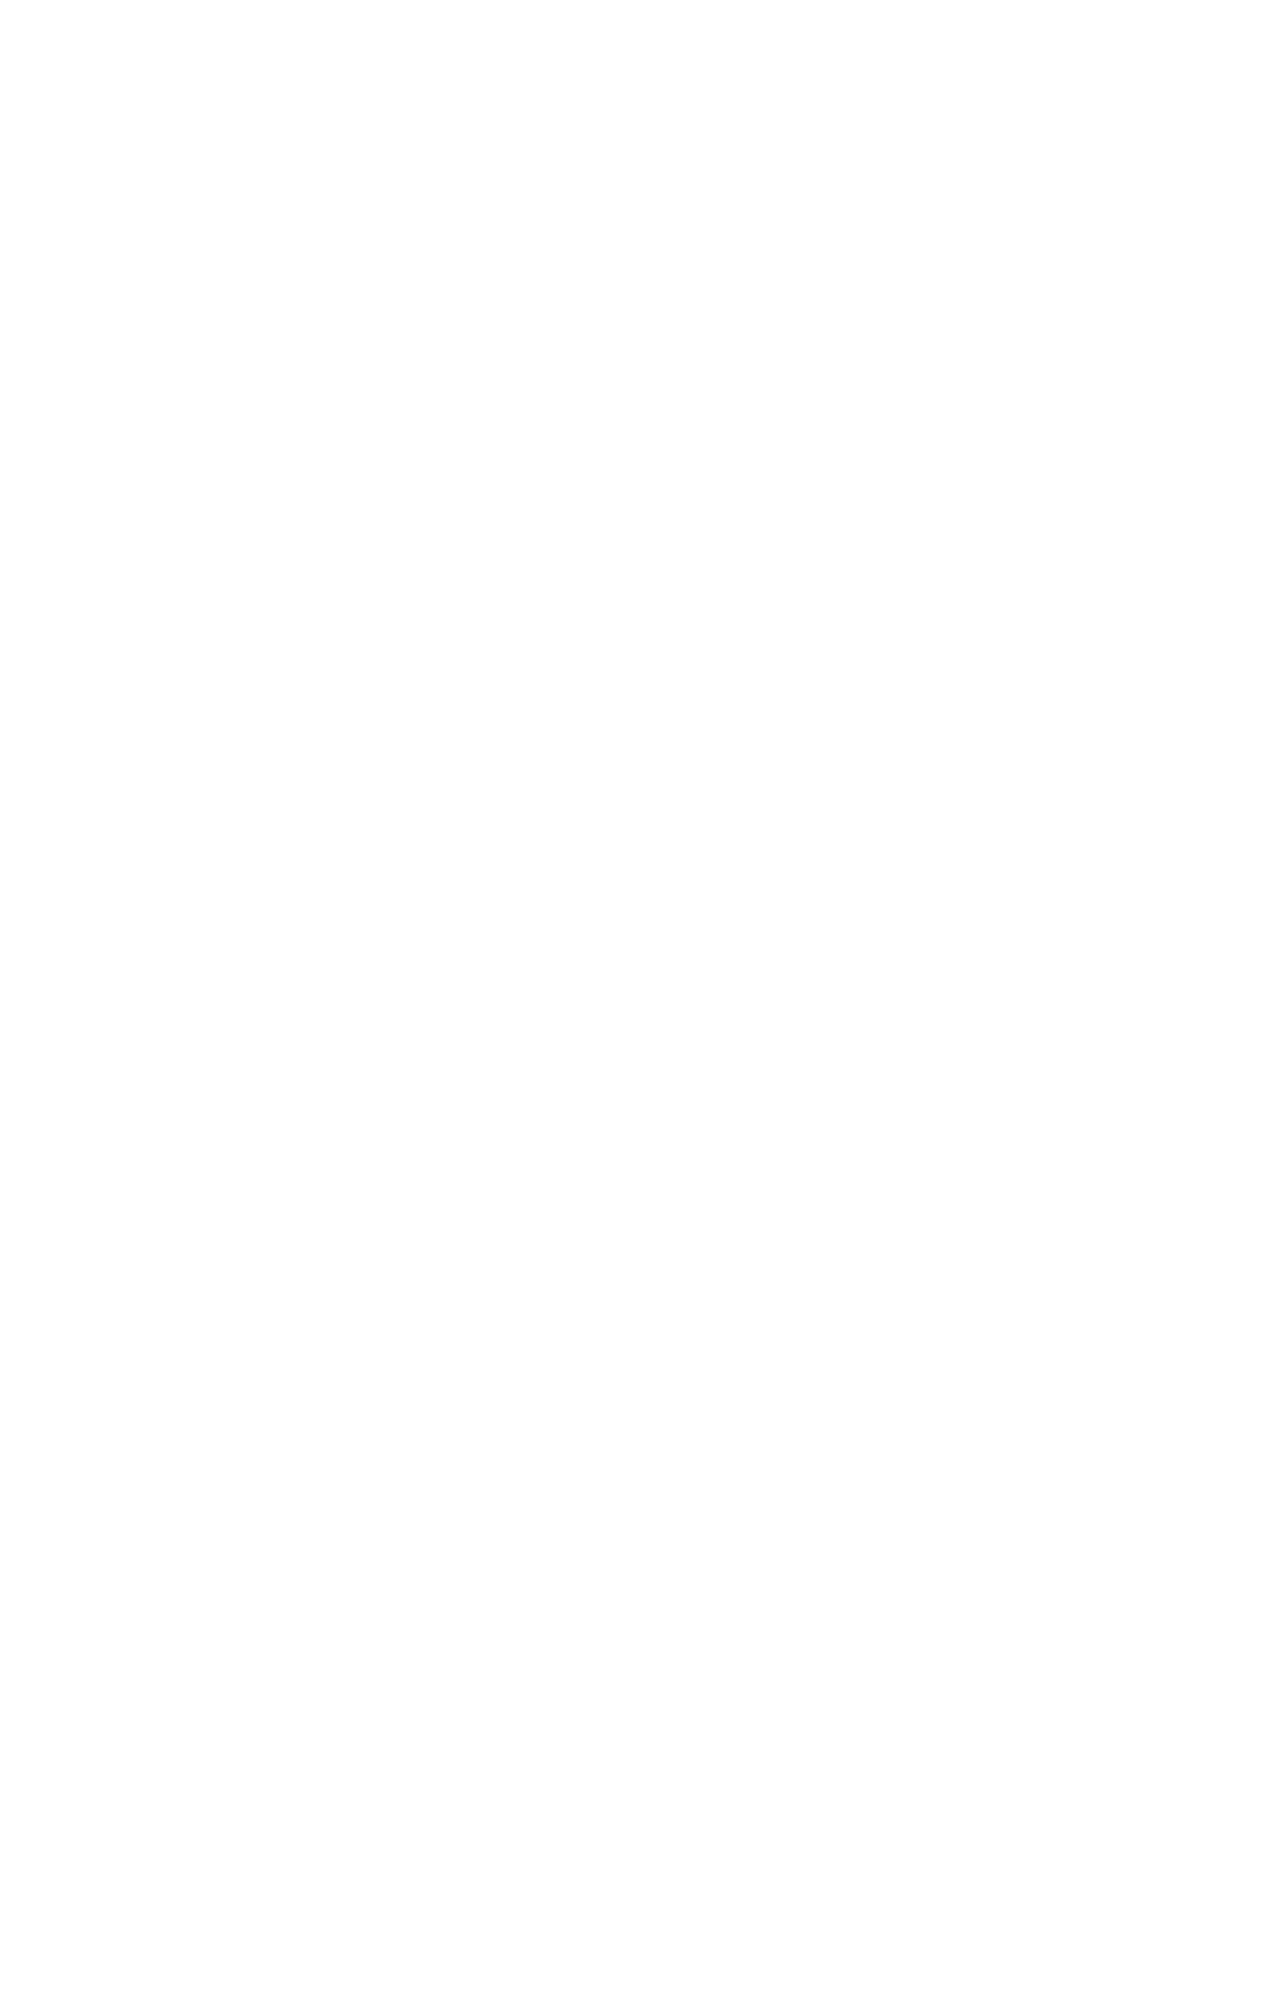 1836's logo